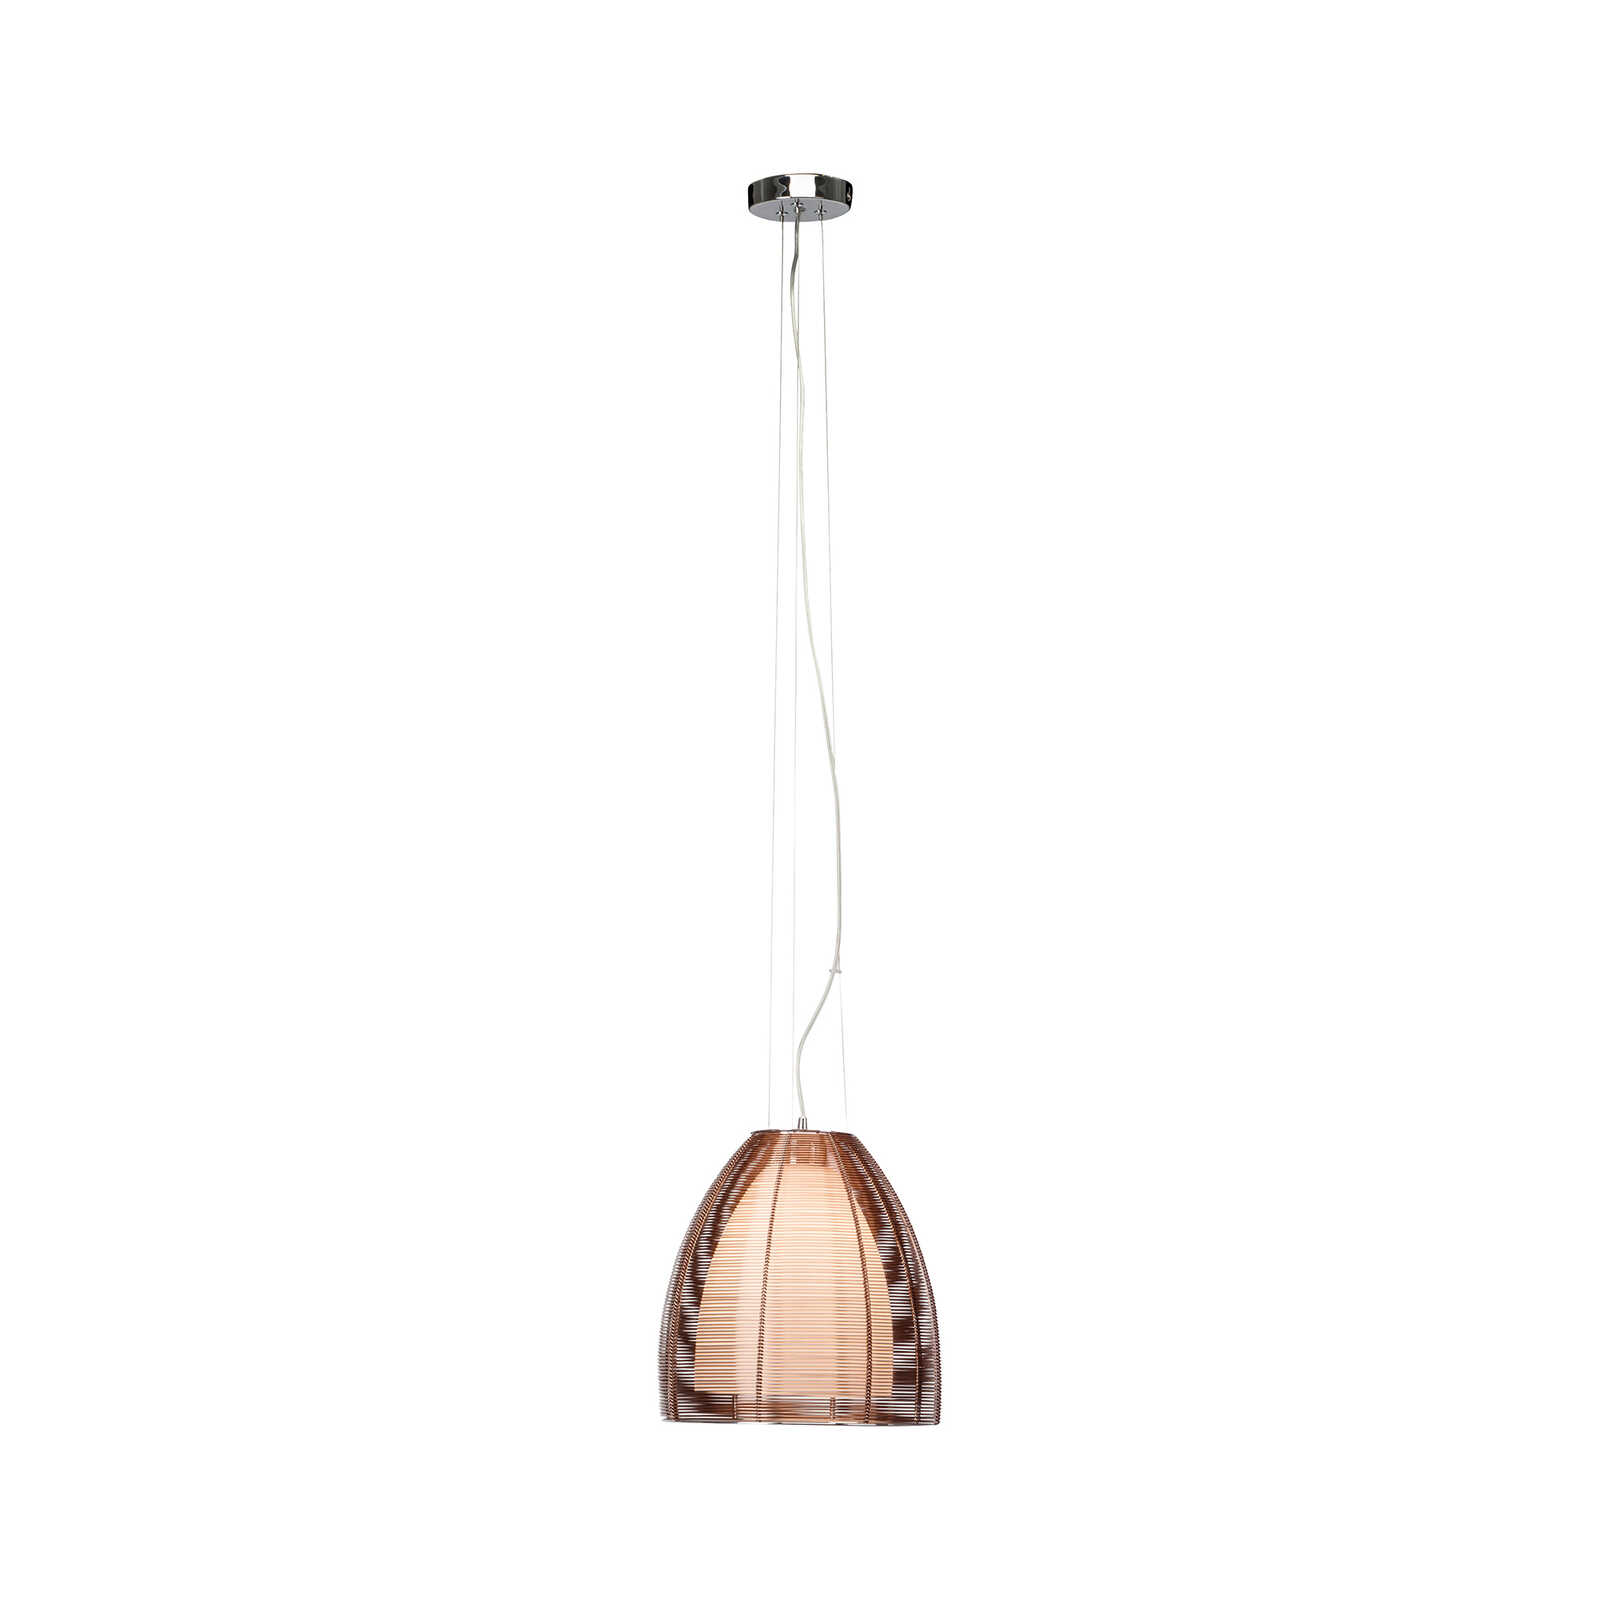 Glazen hanglamp - Maxime 5 - Bruin
